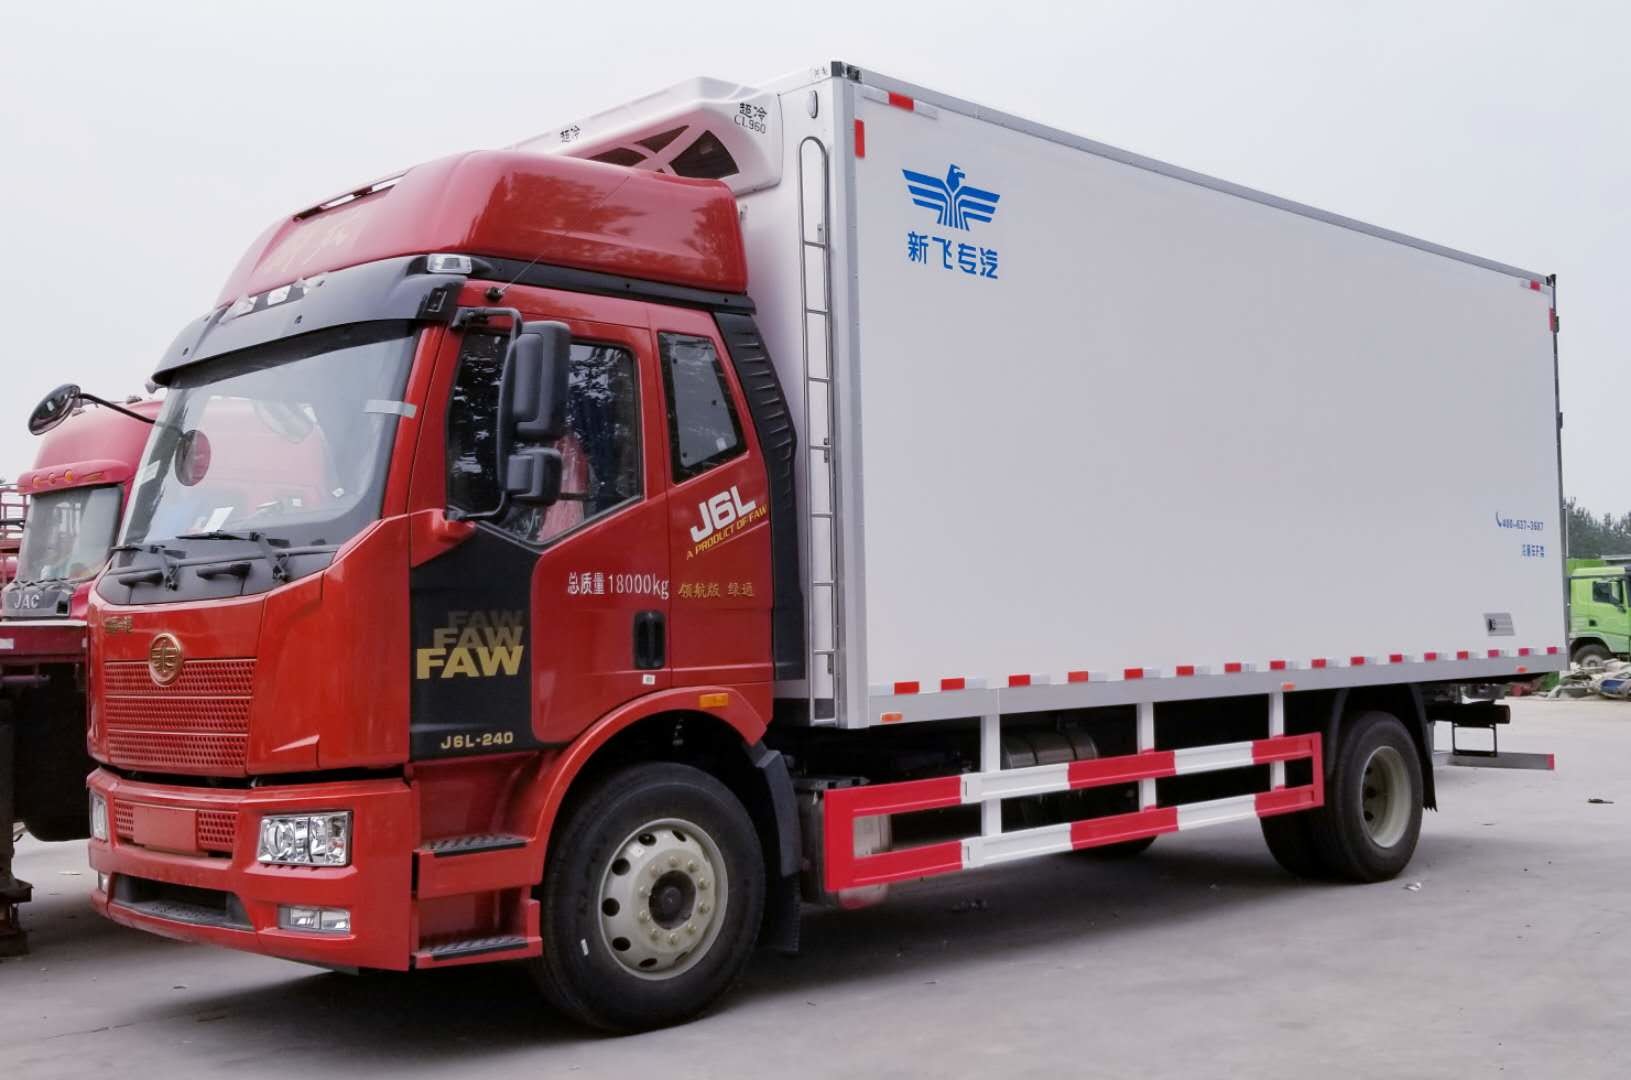 디젤 연료 유형은 트럭 콘테이너 무거운 화물 트럭 4x2 최고 속도 96km/H를 냉장했습니다